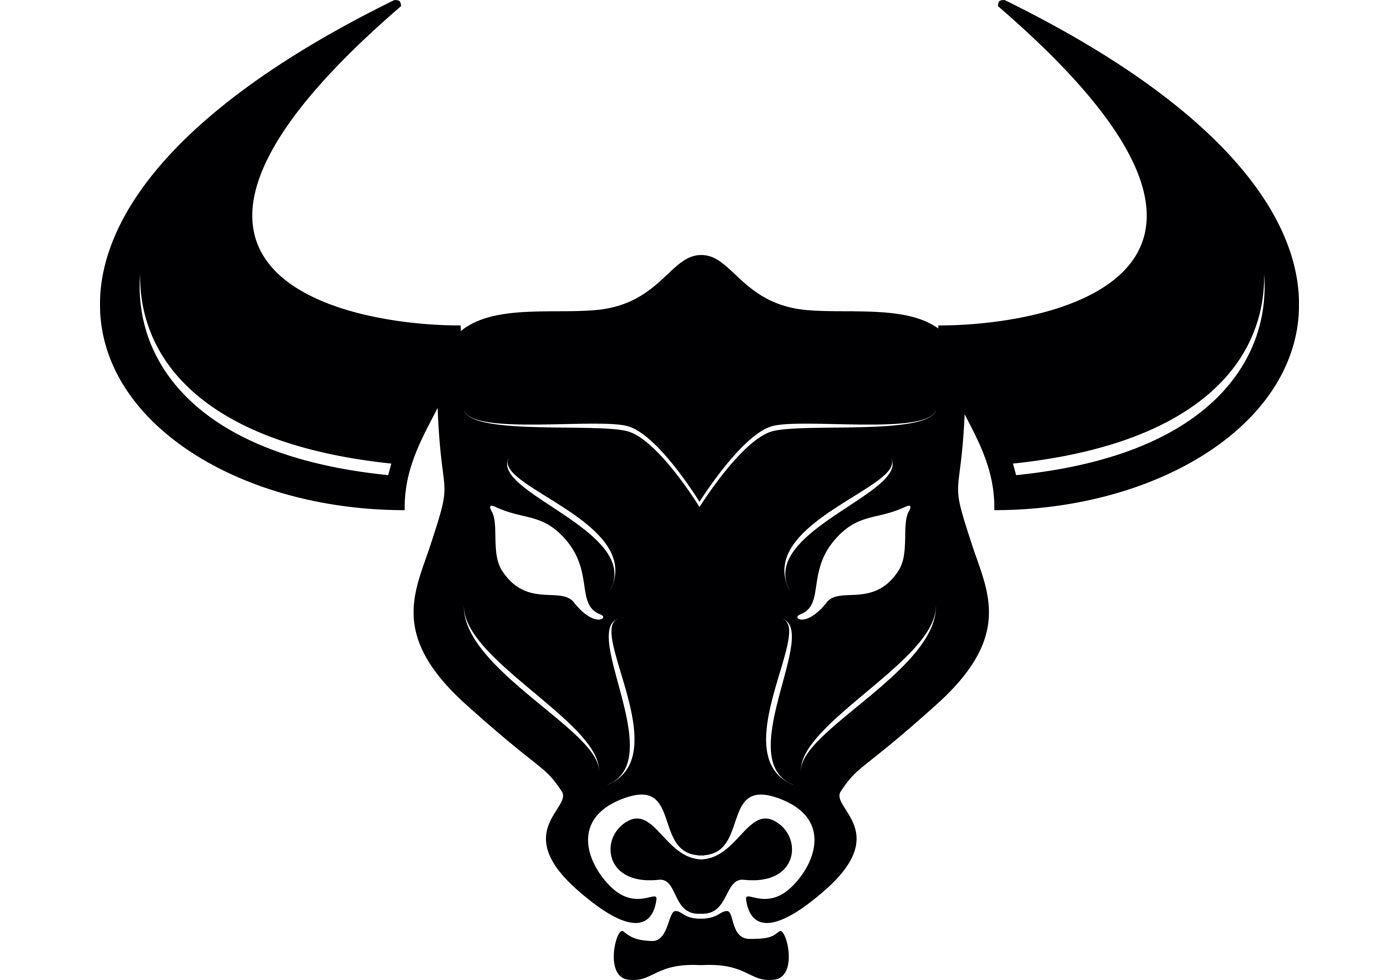 Download Bull Head Vector - Download Free Vector Art, Stock ...